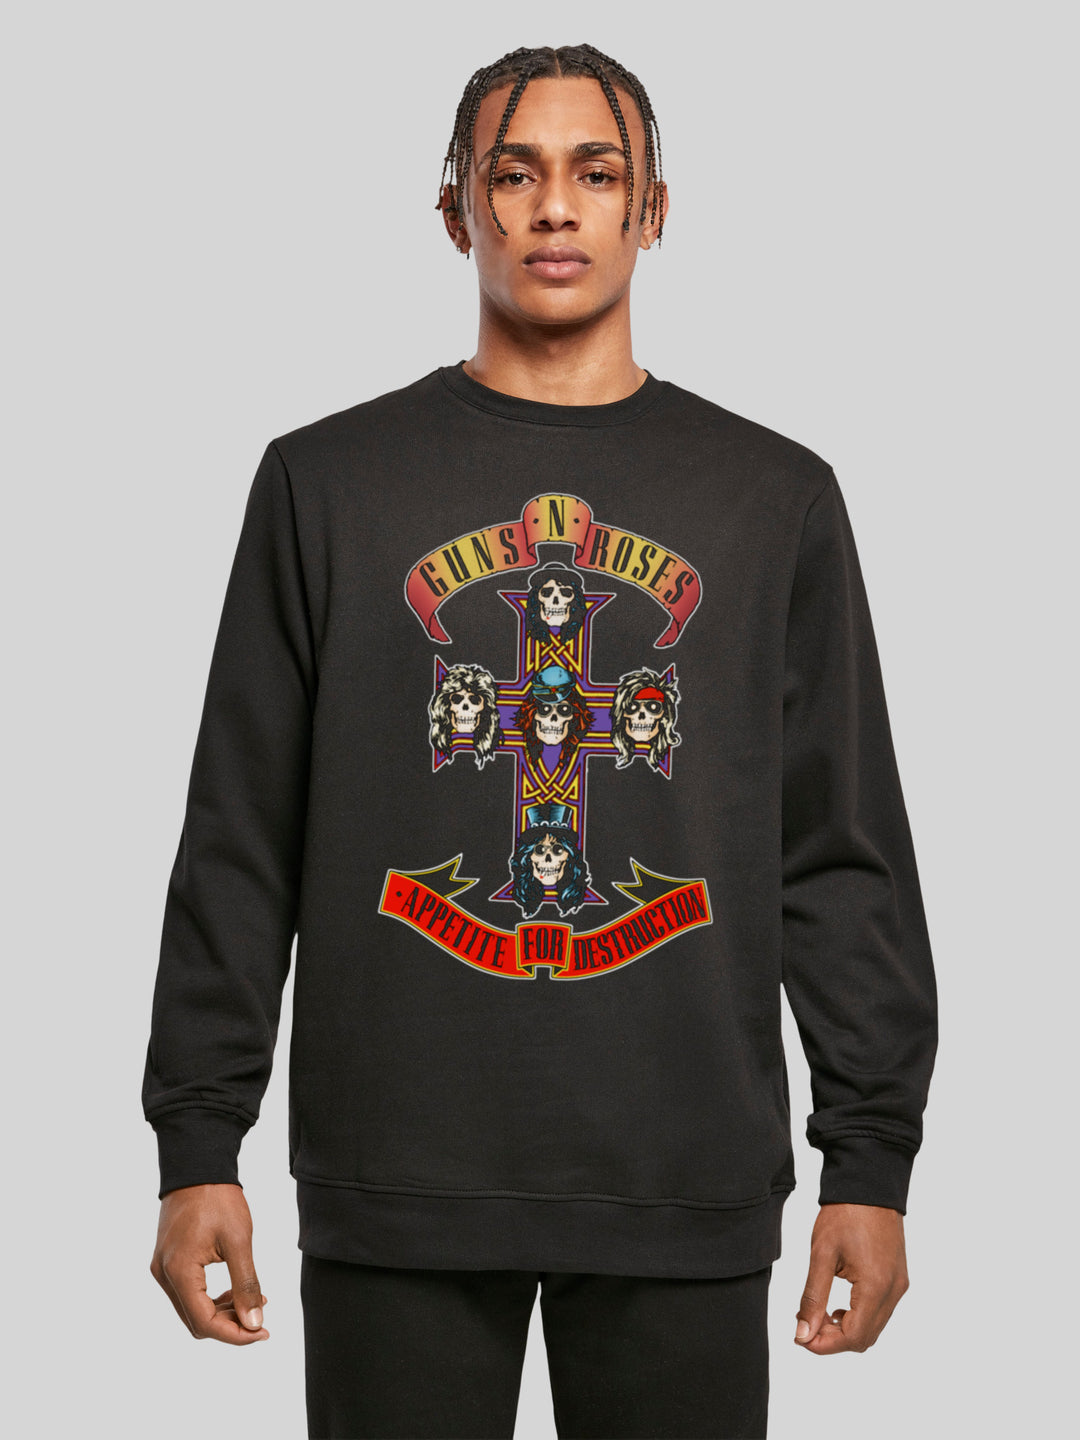 Guns 'n' Roses Sweatshirt | Appetite For Destruction Herren | Longsleeve Sweater